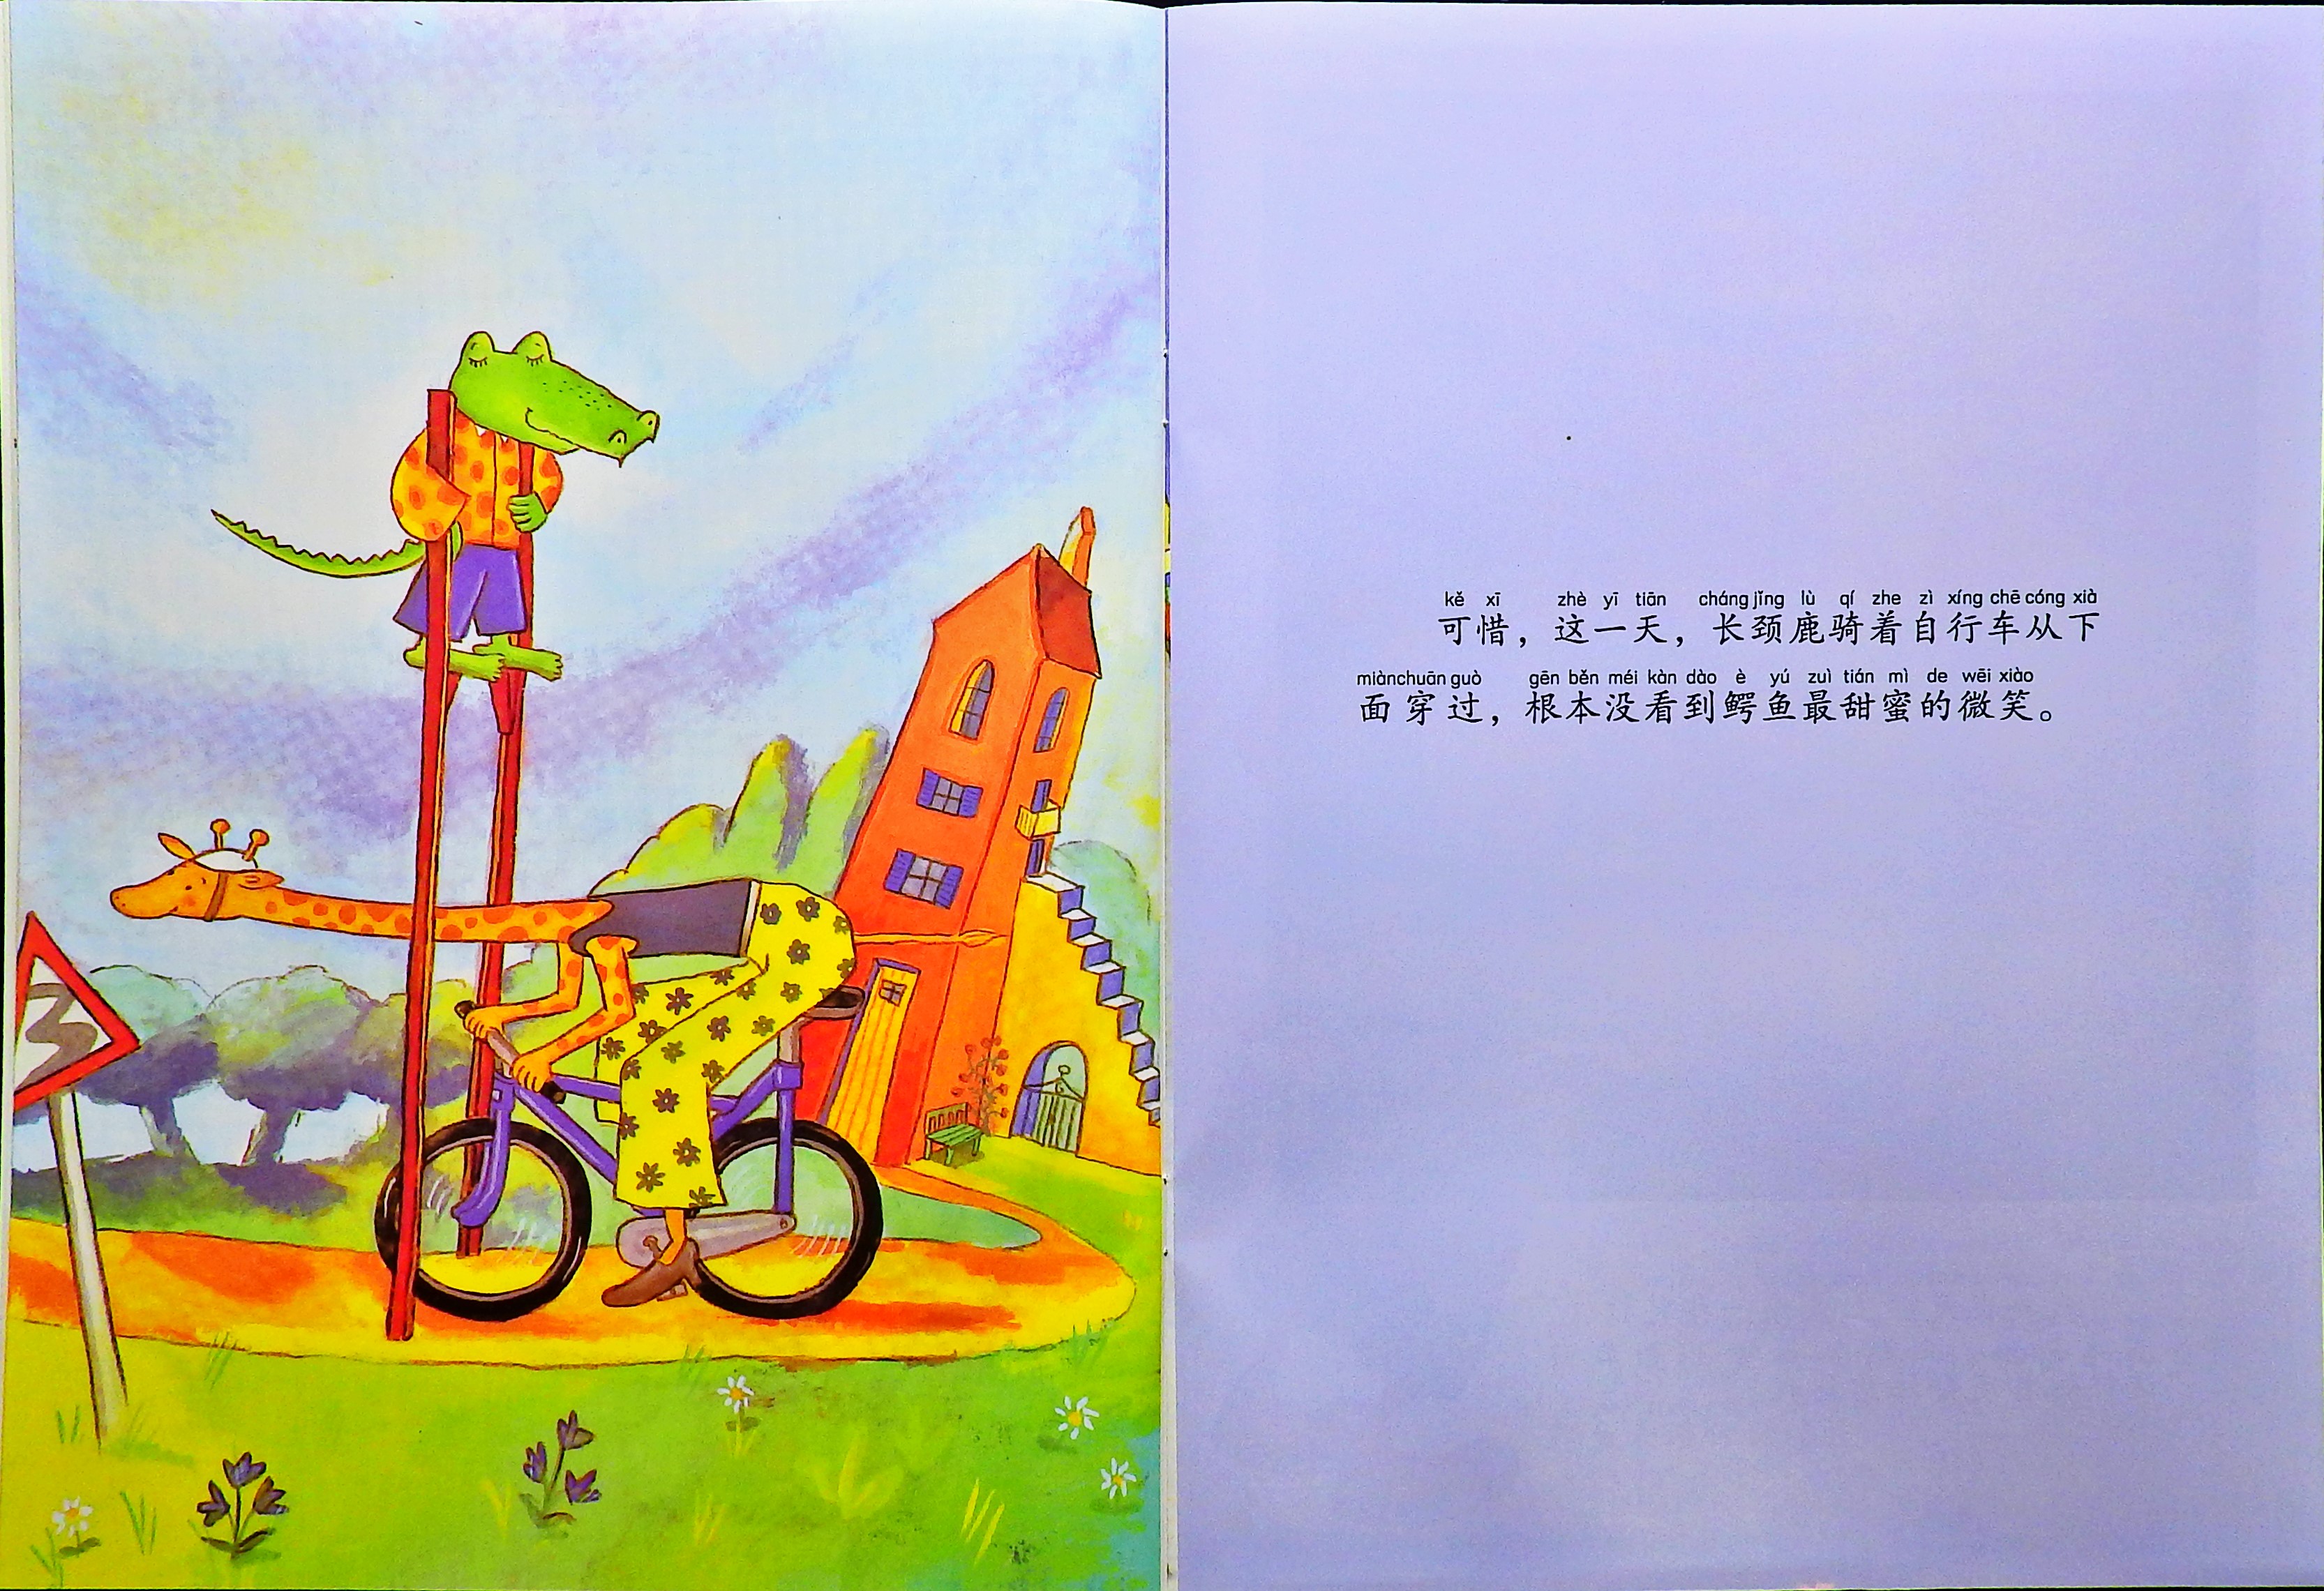 鳄鱼爱上长颈鹿 (08),绘本,绘本故事,绘本阅读,故事书,童书,图画书,课外阅读